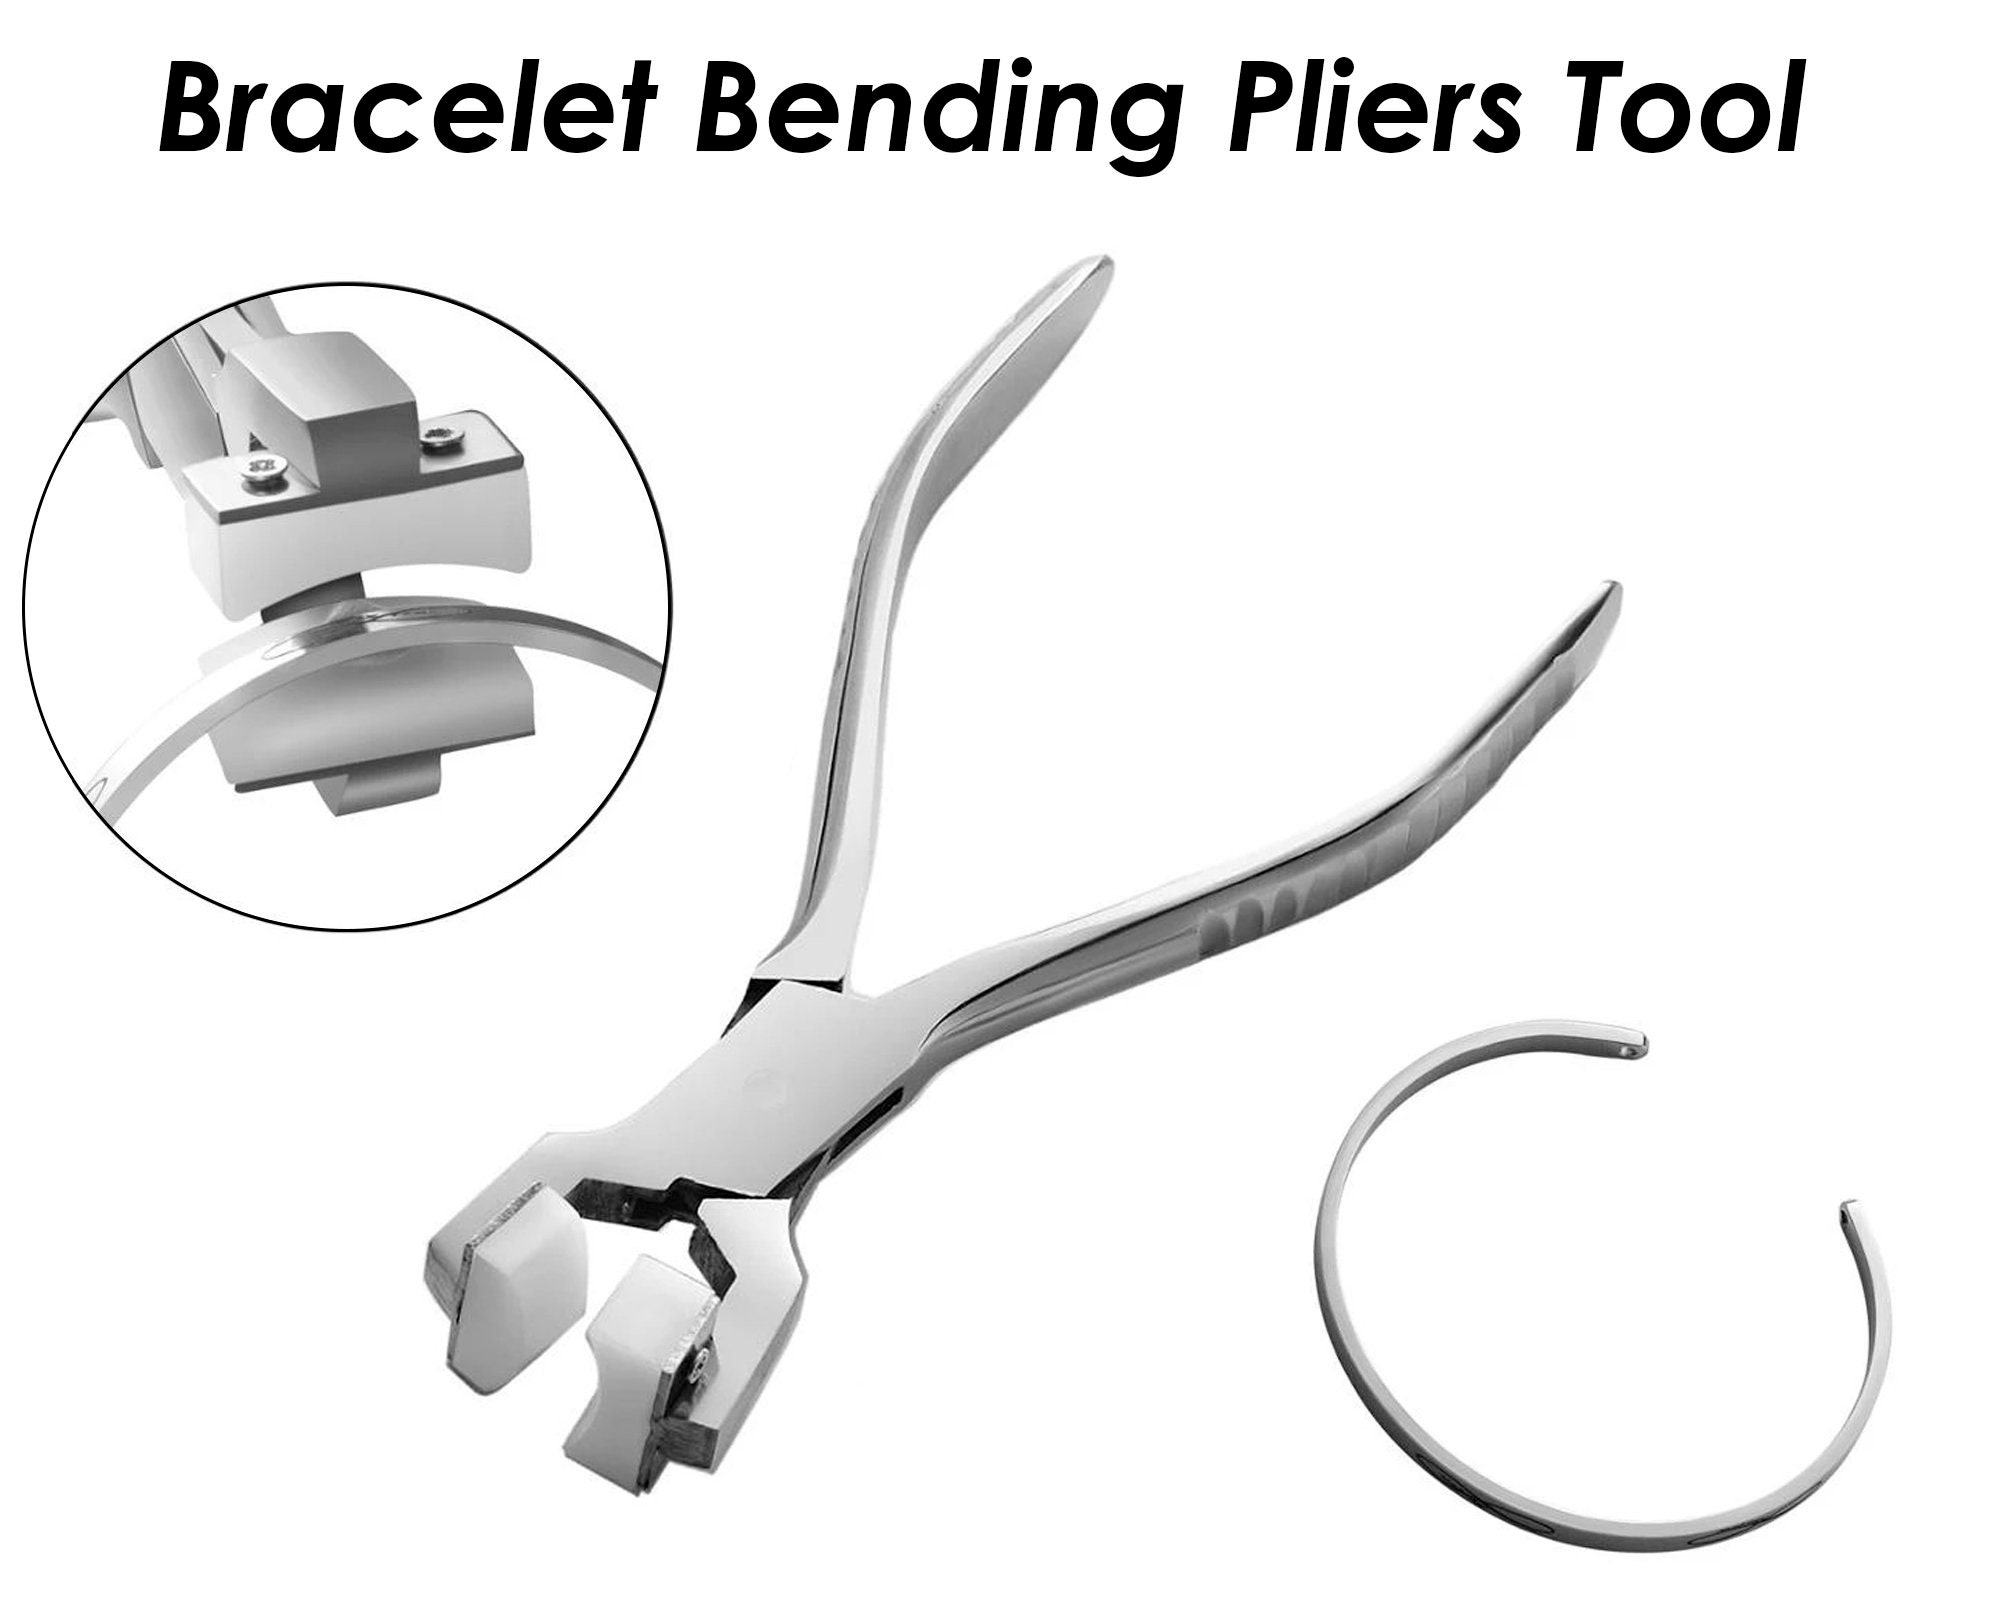 Steel Bracelet Bender Curve Blanks to Shape - High Quality Hardened Steel